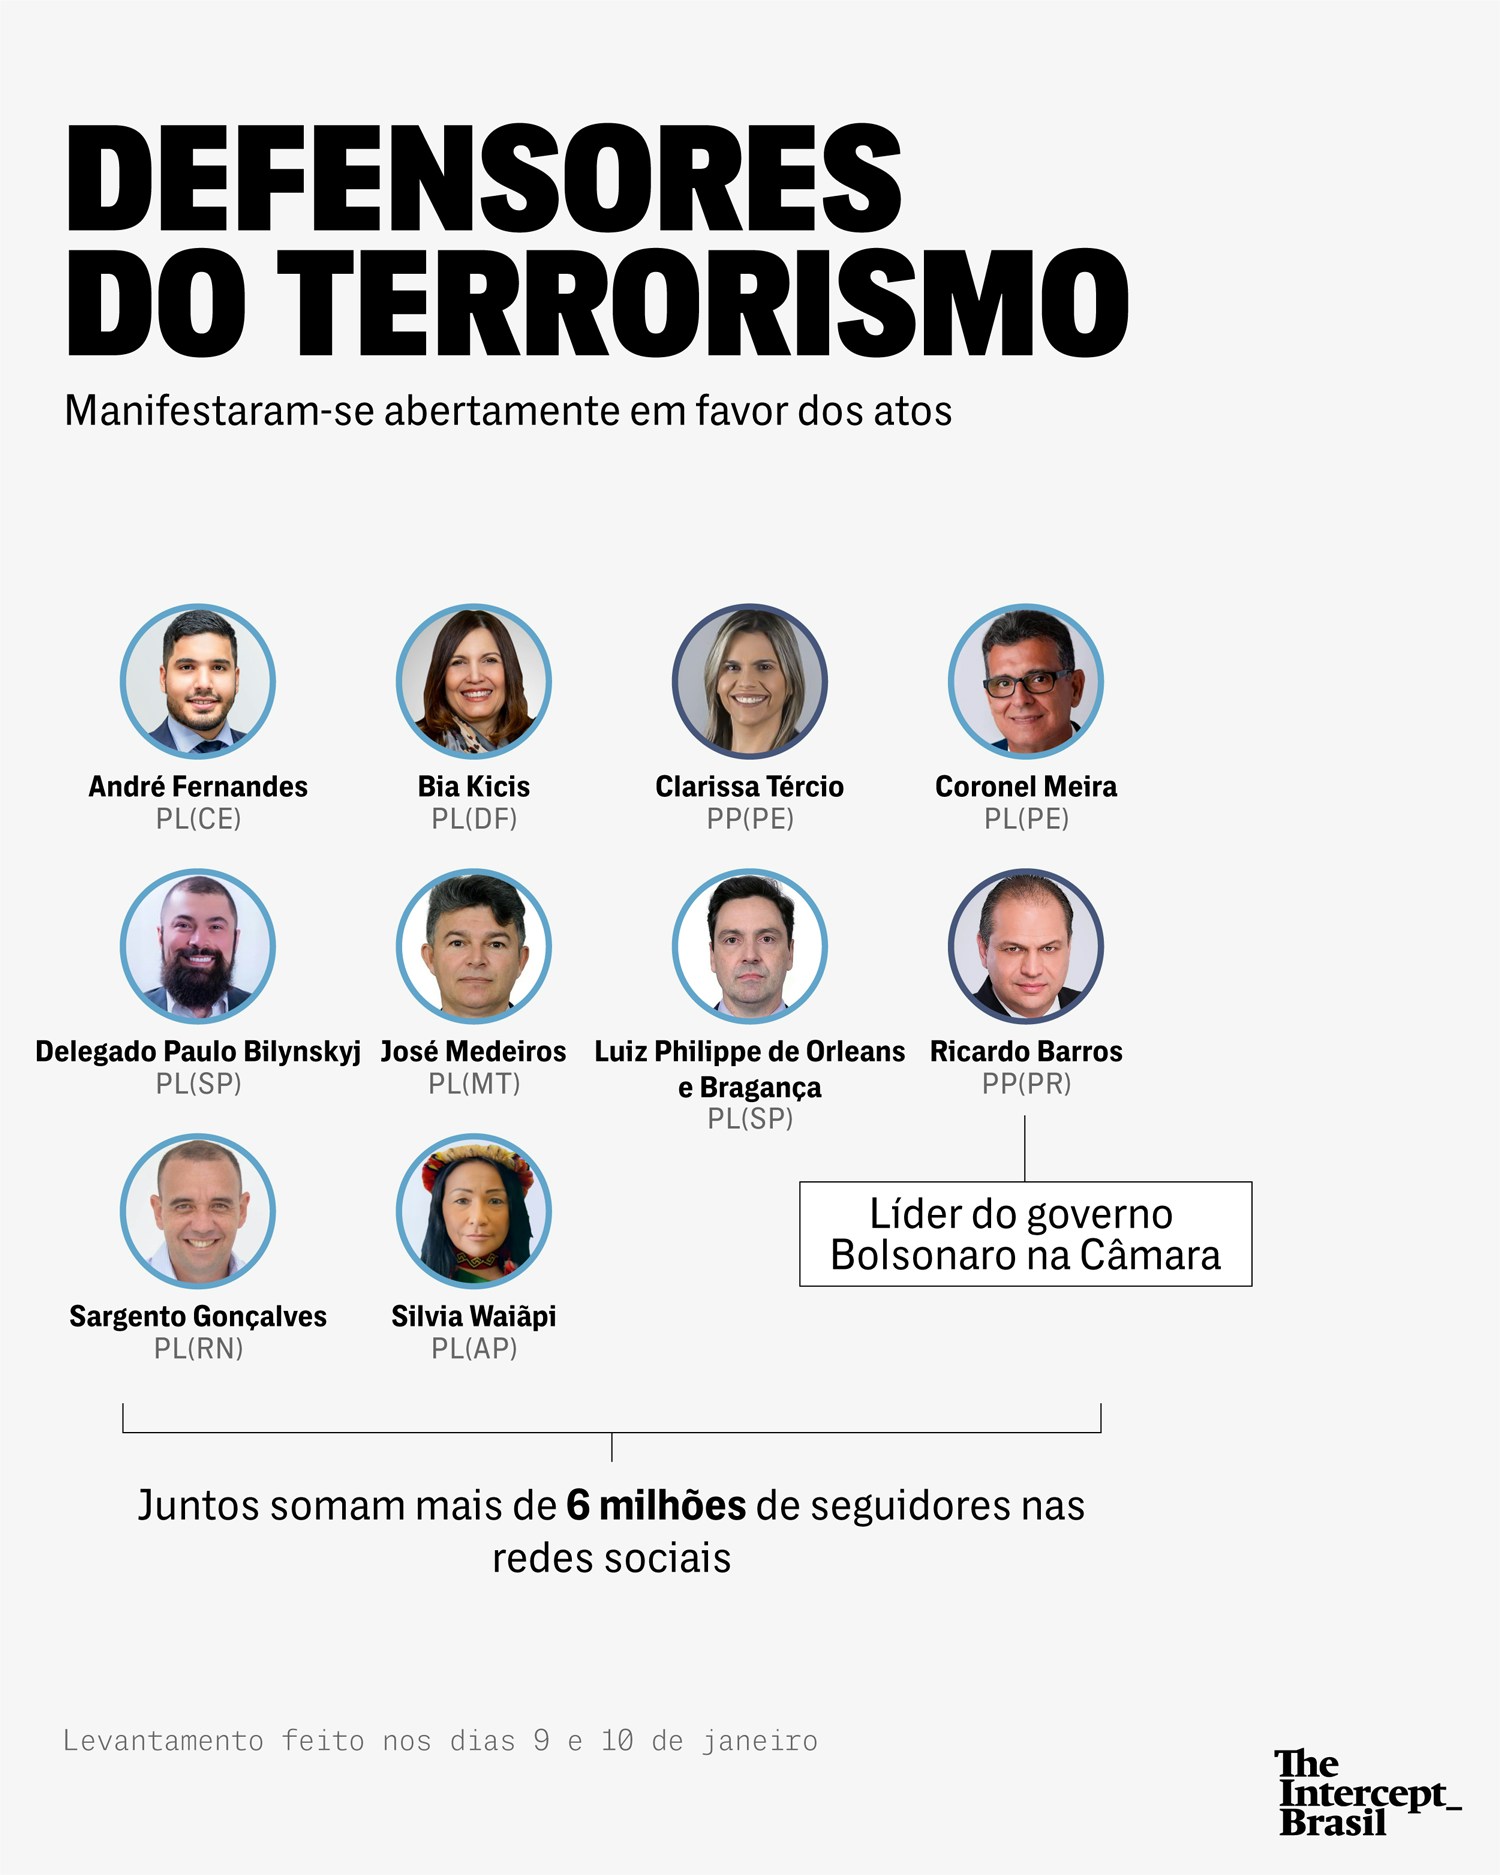 deputados defensores terrorismo - Cabo Gilberto e mais 45 deputados federais são citados em levantamento dos que apoiaram terrorismo em Brasília